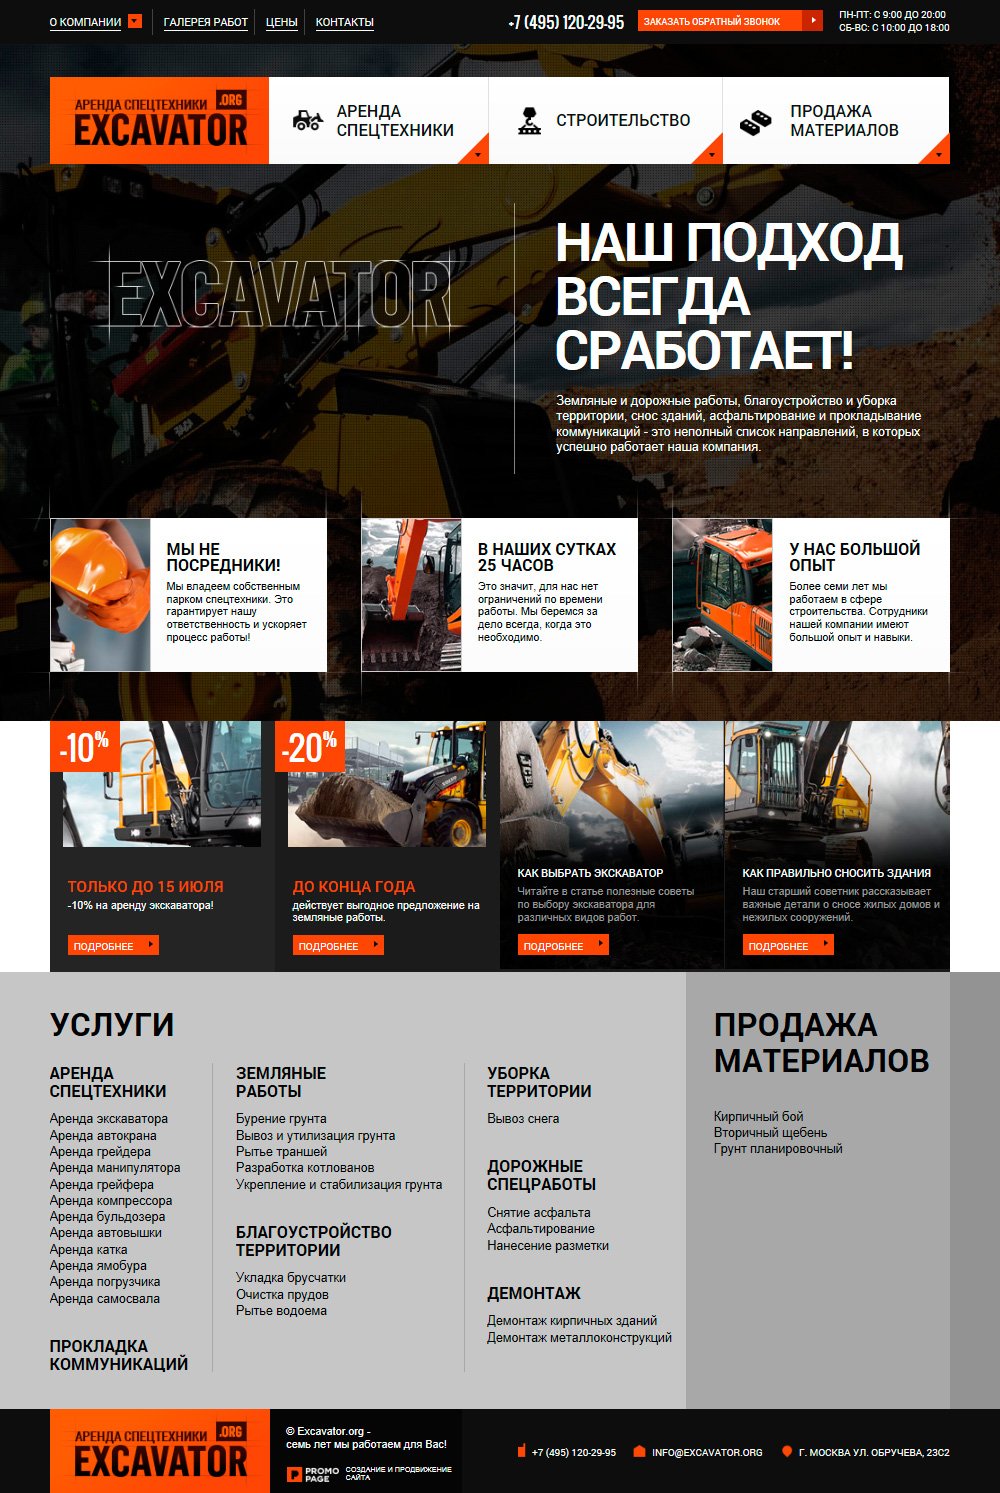 Главная страница сайта строительной компании Excavator.org